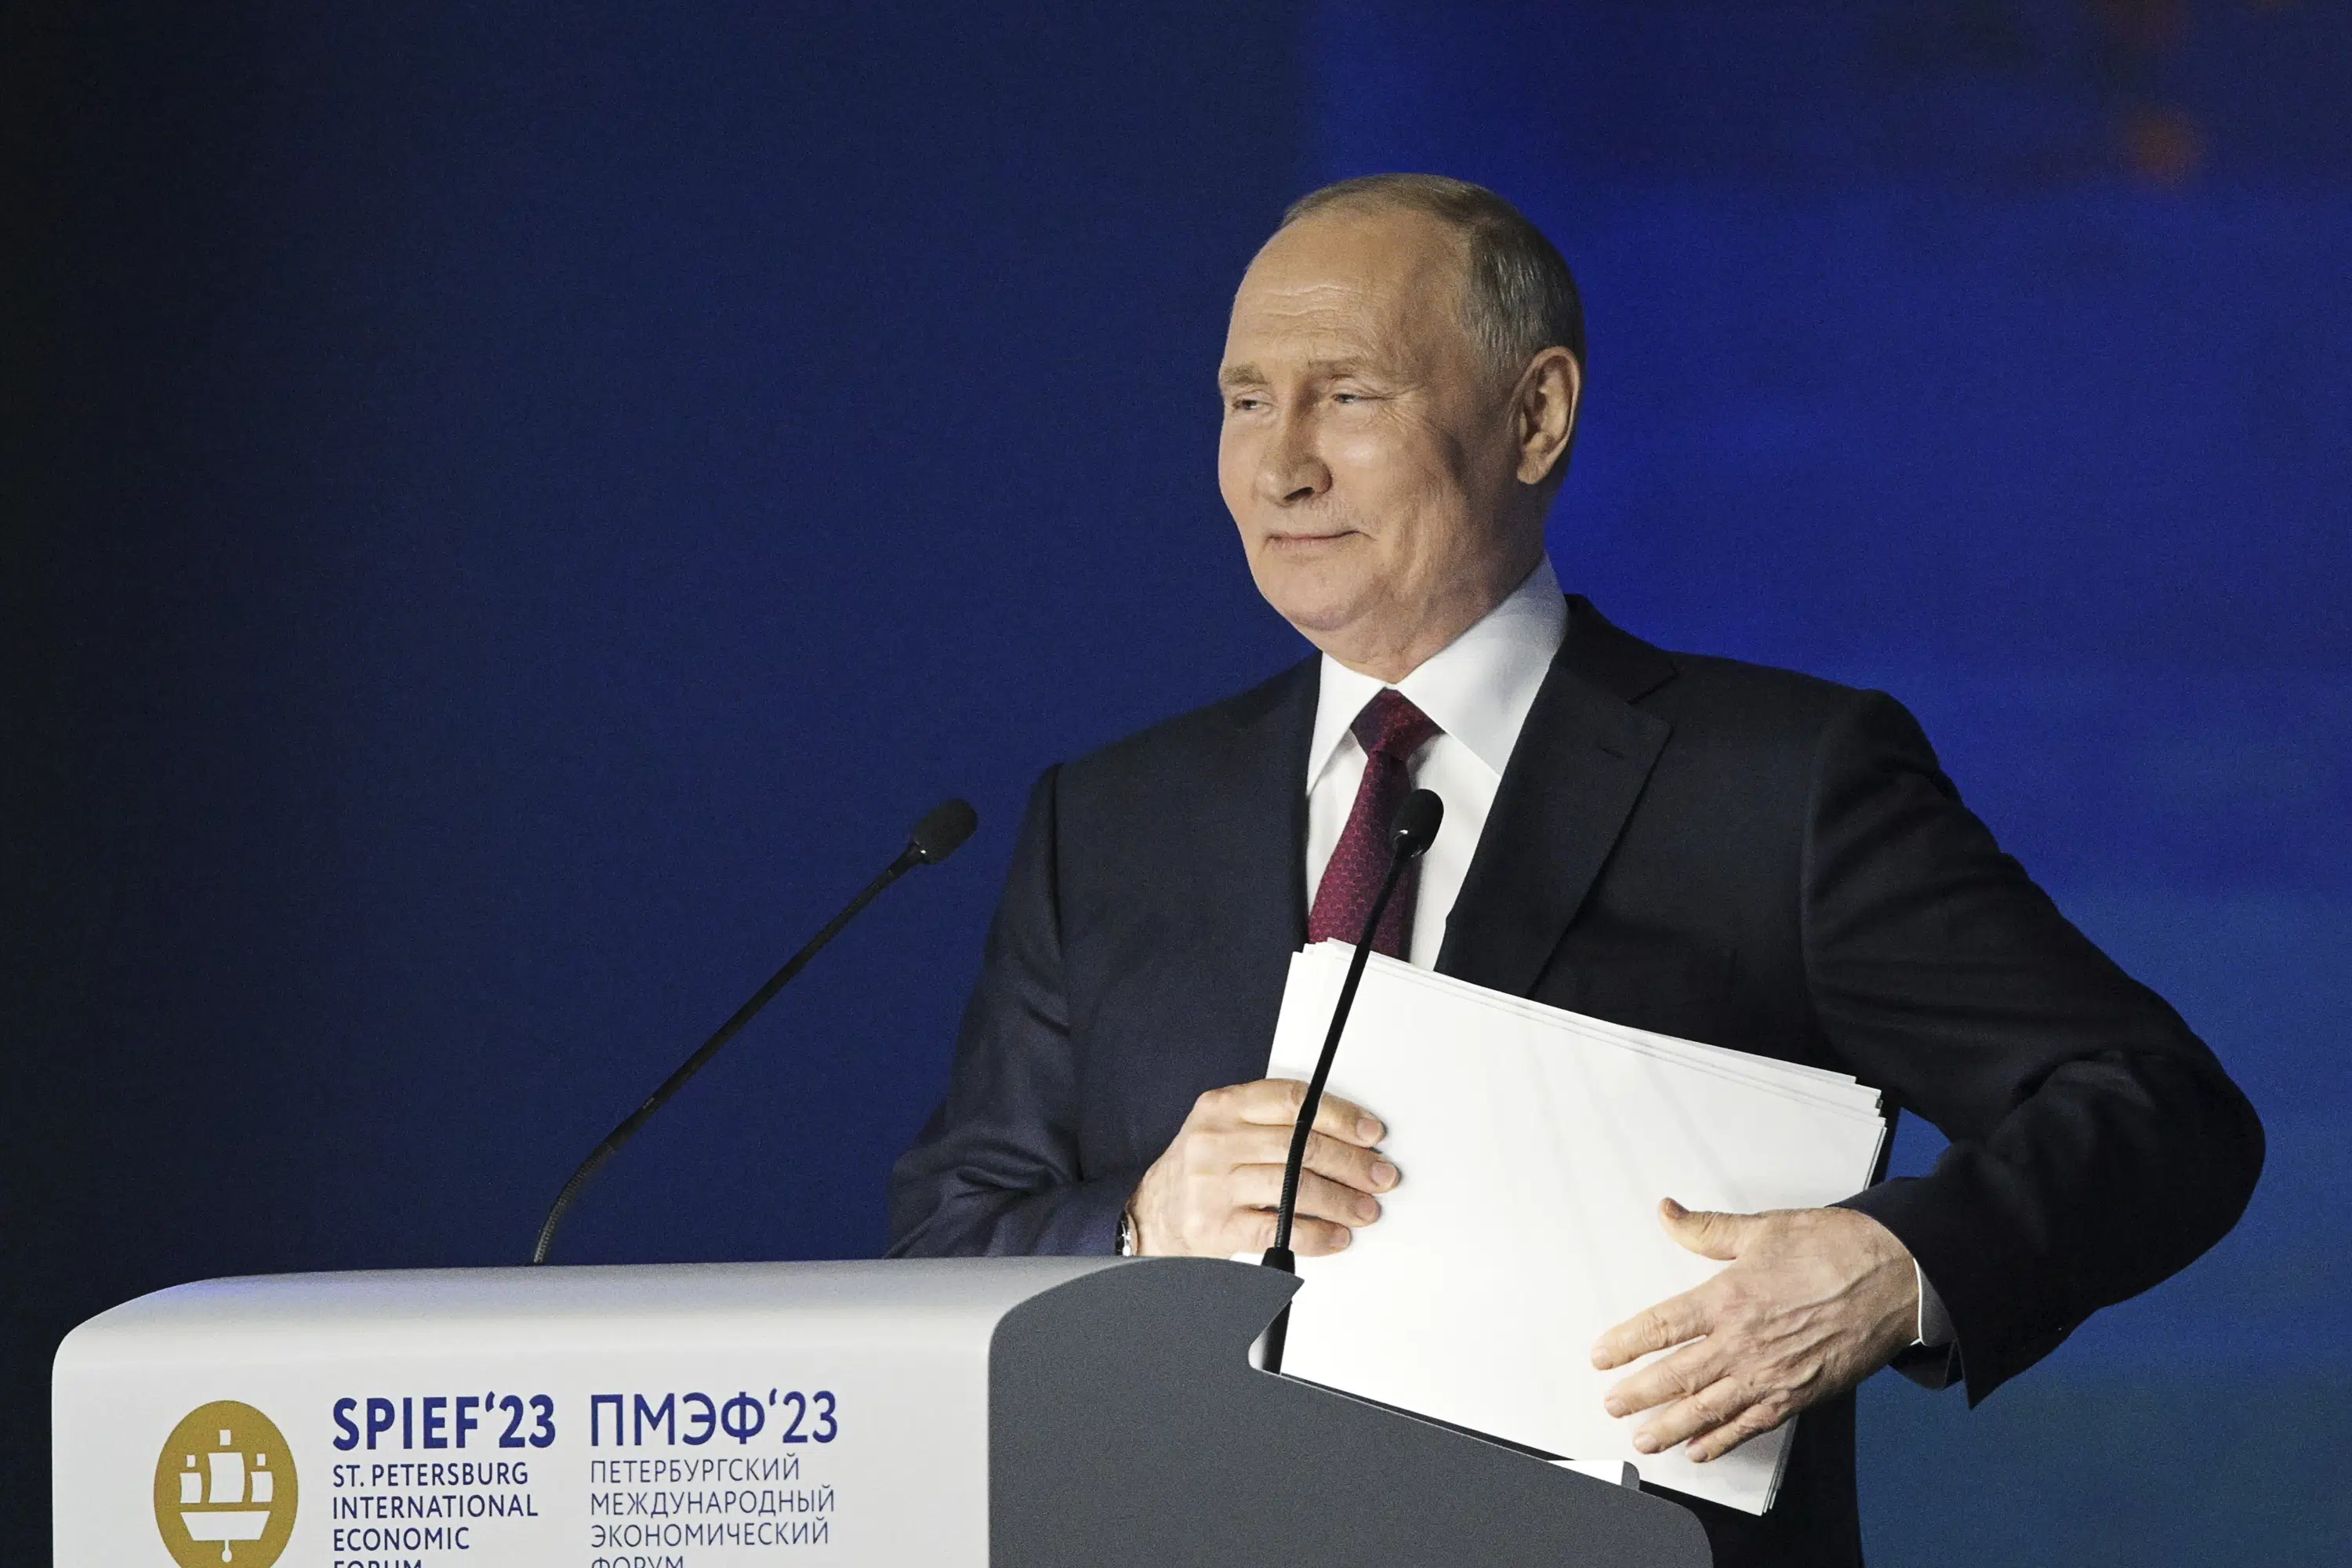 يعتبر بوتين متفائلًا بشأن الاقتصاد الروسي حيث يبتعد المستثمرون الغربيون عن الحدث في سان بطرسبرج